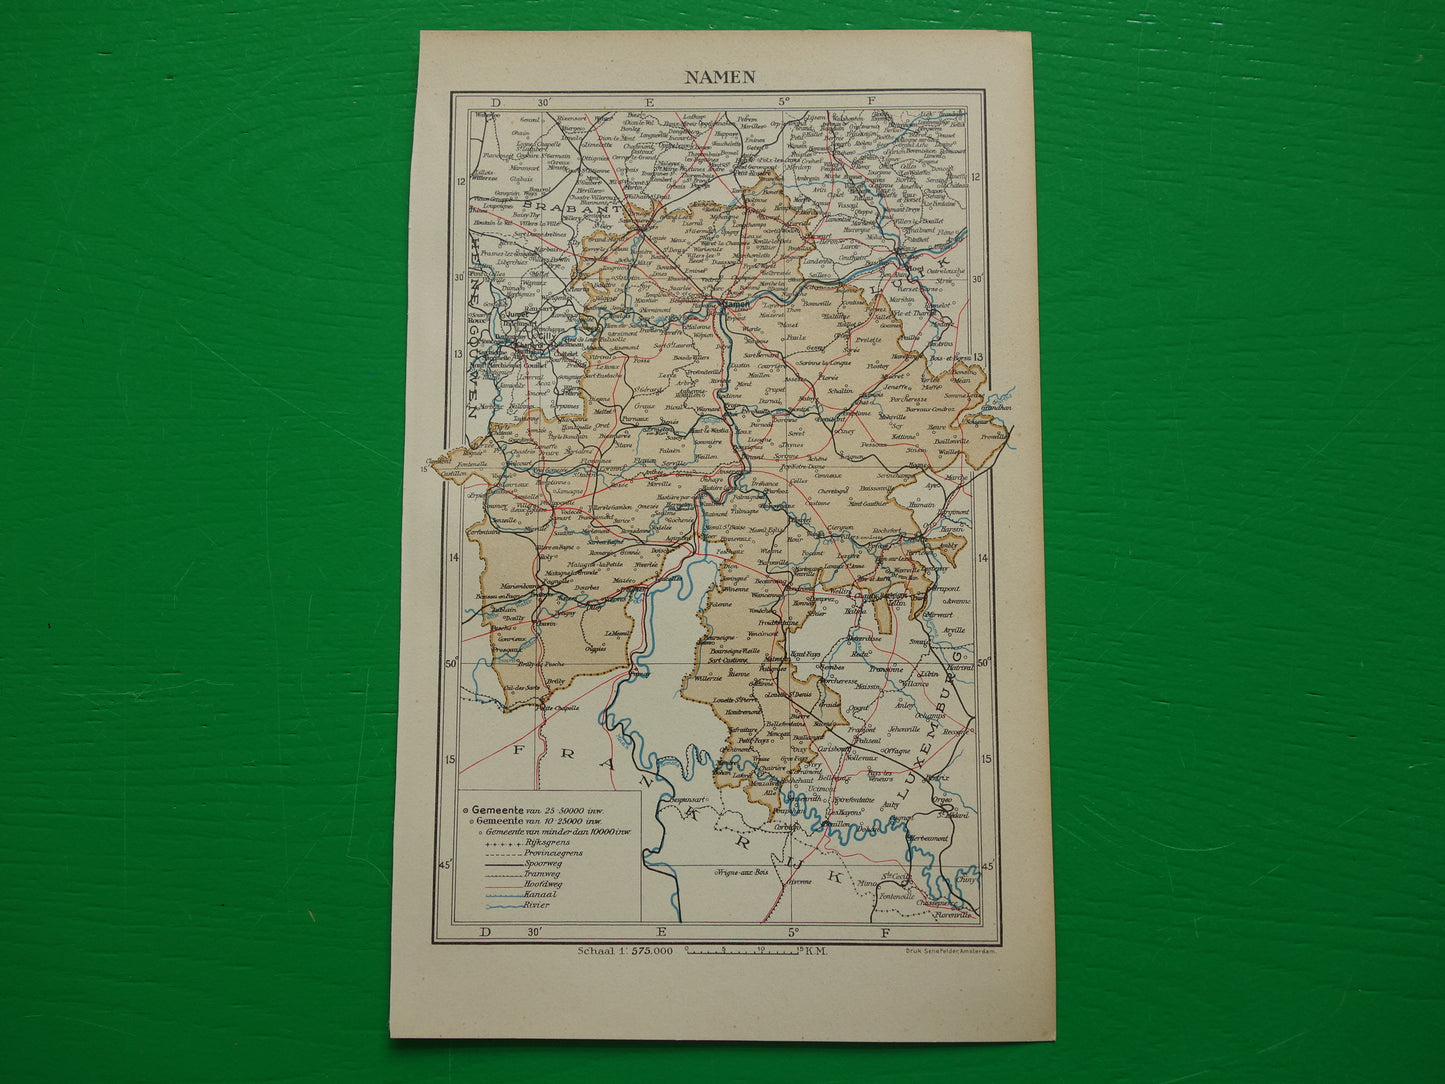 NAMEN oude kaart van provincie Namen België uit 1937 kleine originele vintage landkaart Namur Nameur